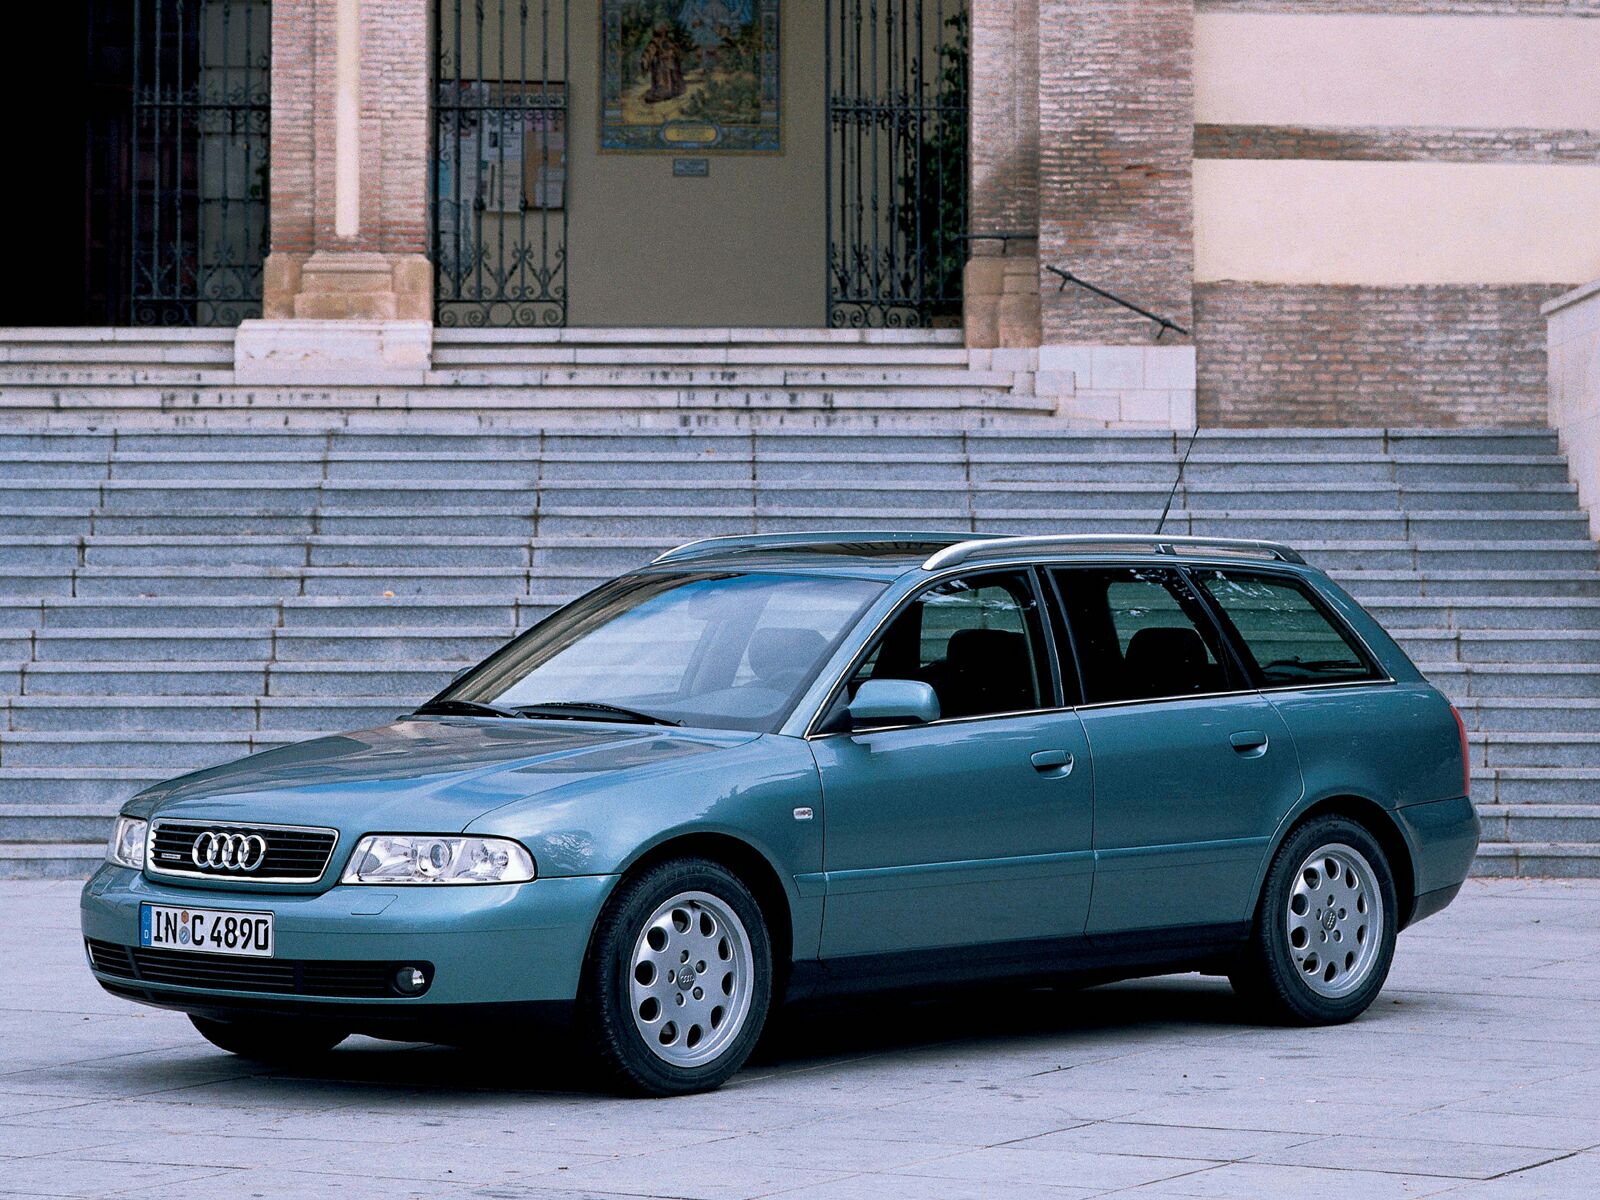 Купить ауди а4 б5 универсал. Ауди а4 Авант 2000. Audi a4 универсал 2000. Audi a4 b5 Wagon. Audi a4 2001 универсал.